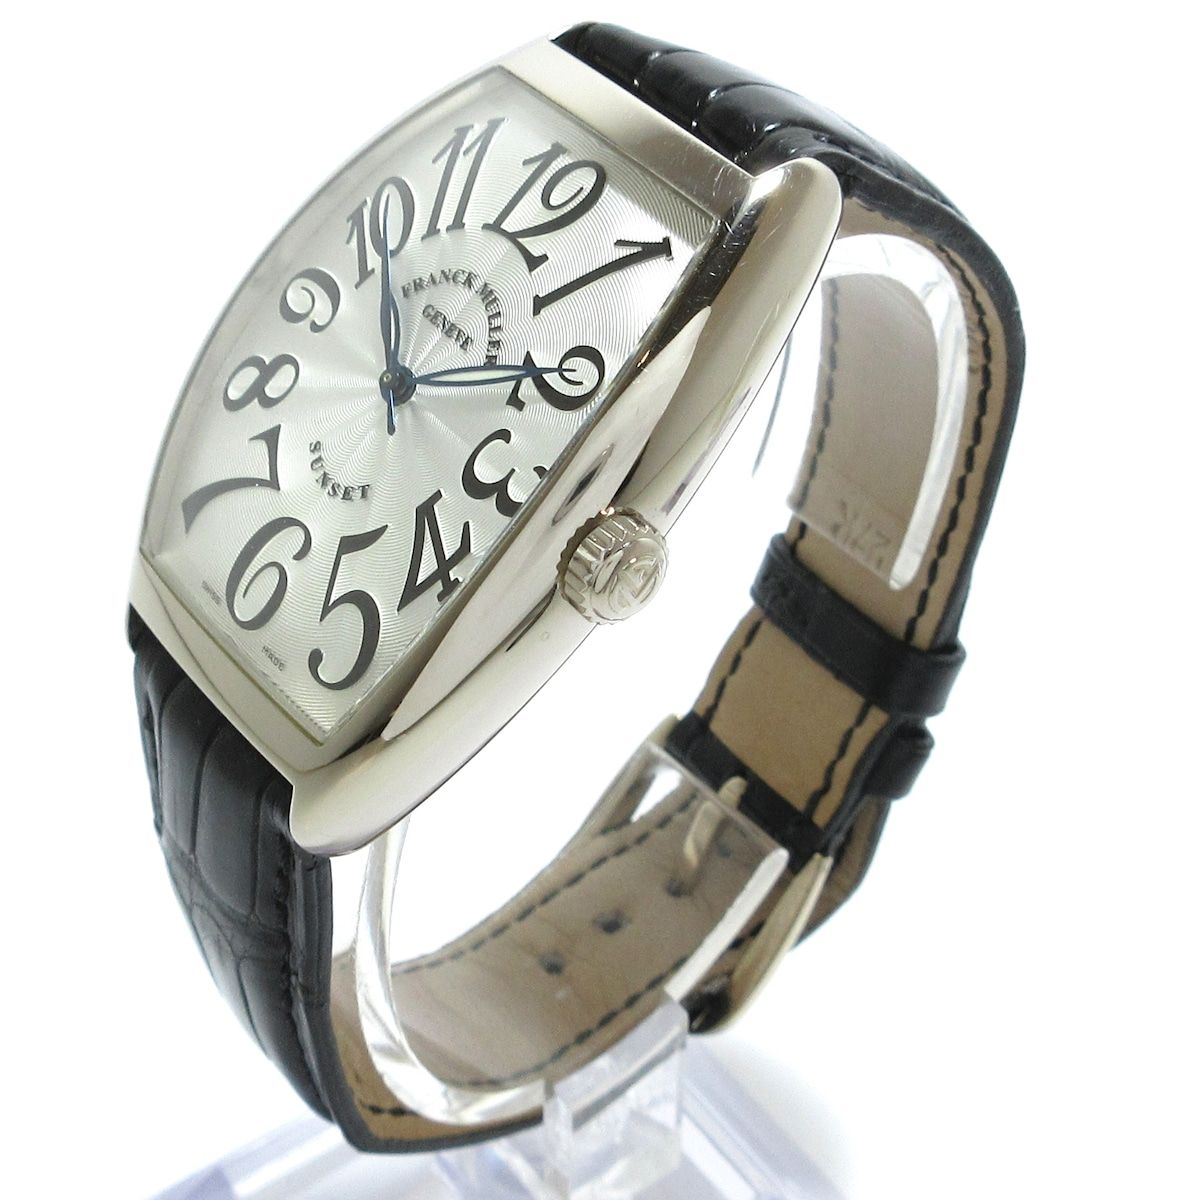 FRANCK MULLER(フランクミュラー) 腕時計 トノーカーベックス サン 